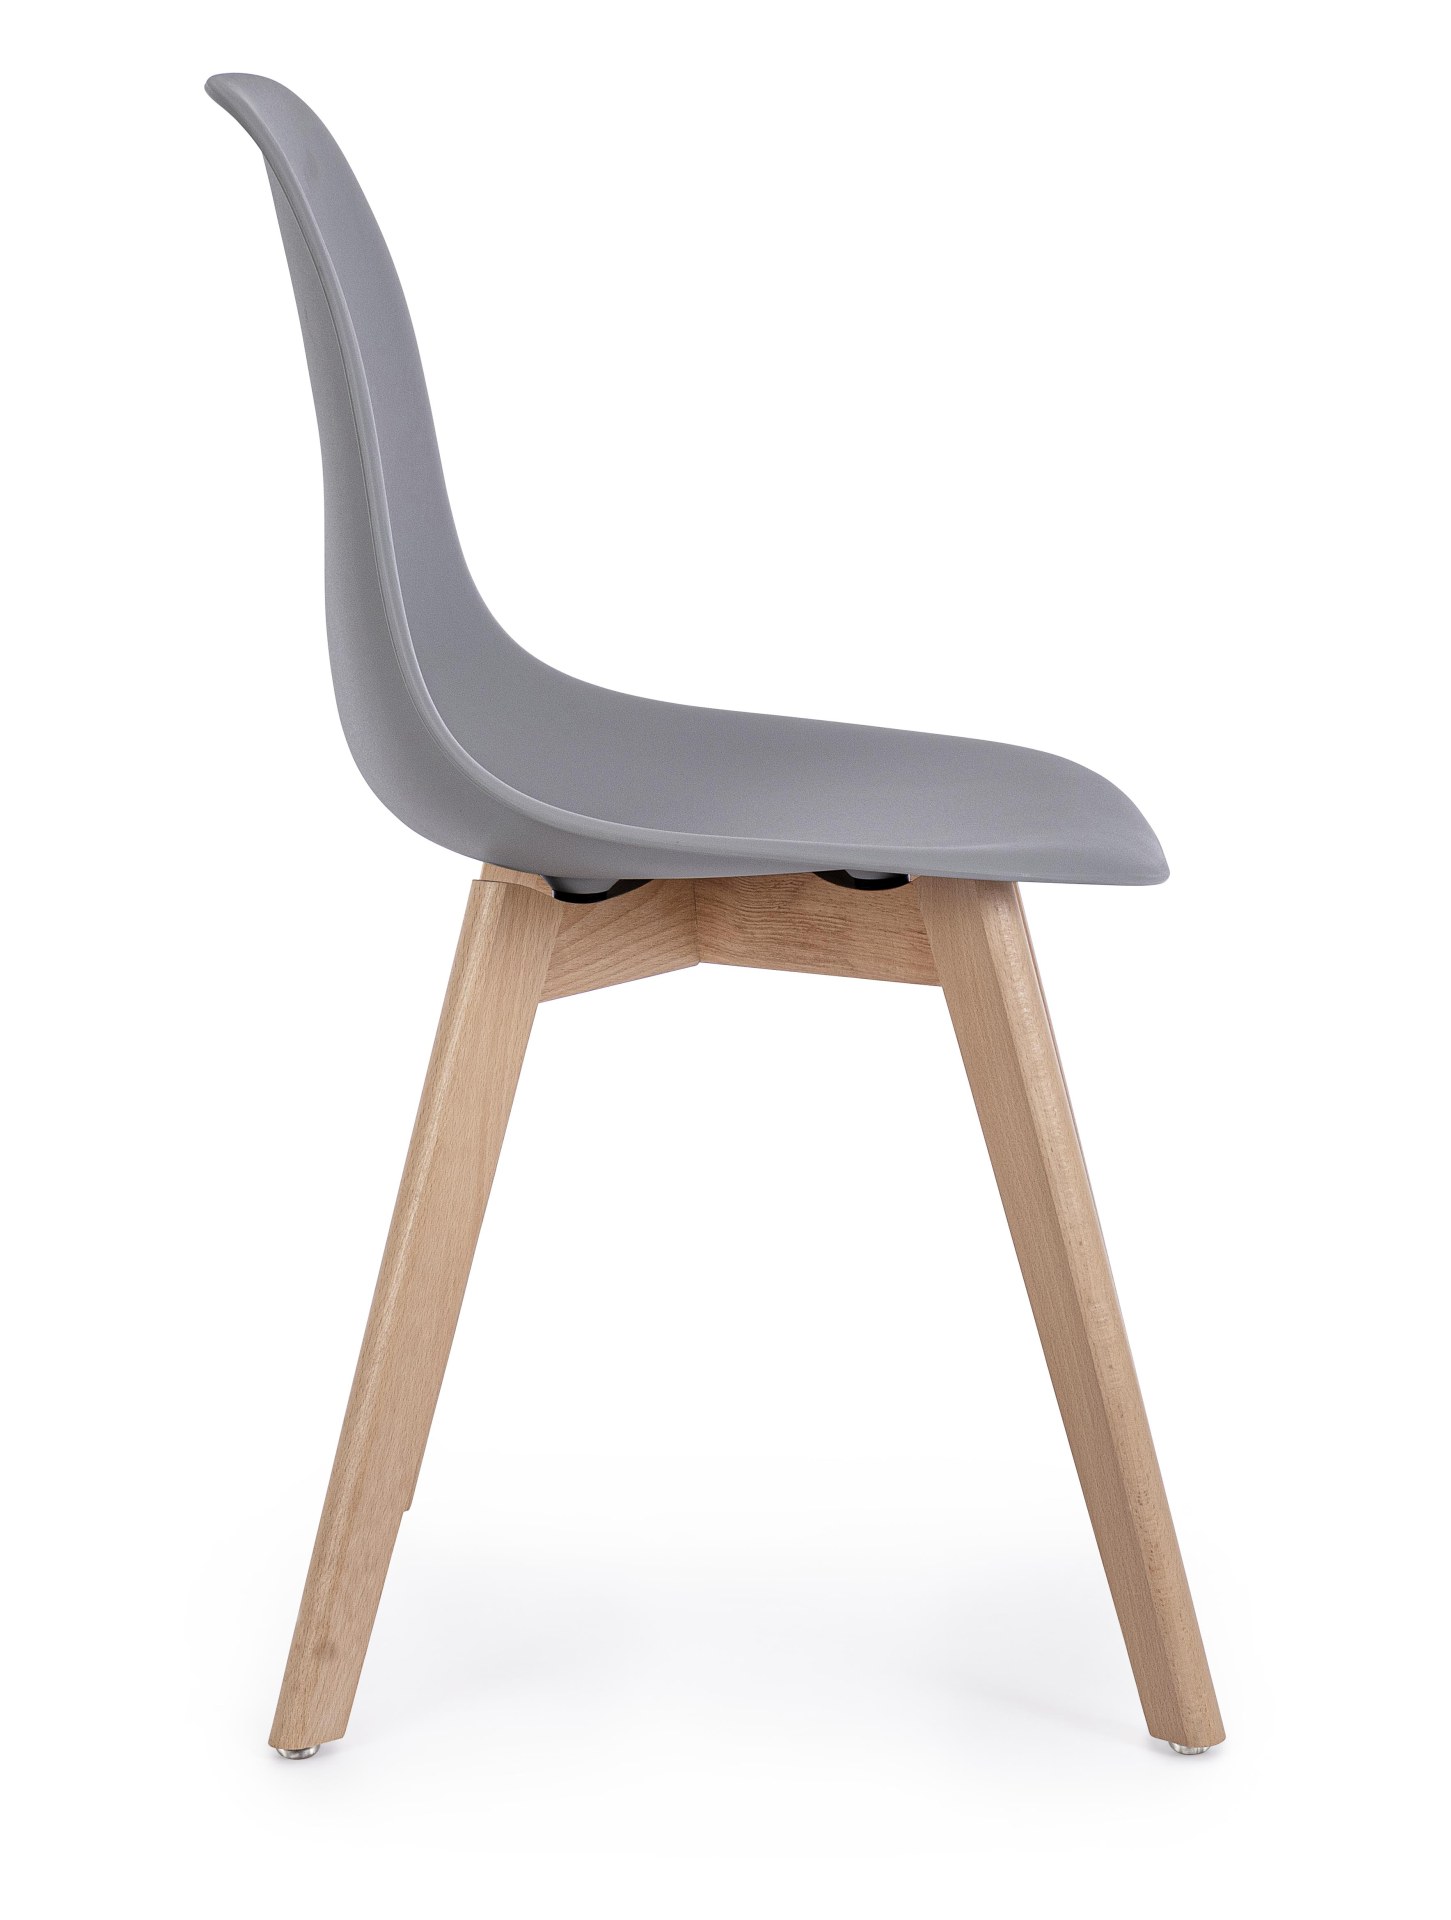 Der Stuhl System überzeugt mit seinem modernem Design. Gefertigt wurde der Stuhl aus Kunststoff, welcher einen grauen Farbton besitzt. Das Gestell ist aus Buchenholz. Die Sitzhöhe des Stuhls ist 46 cm